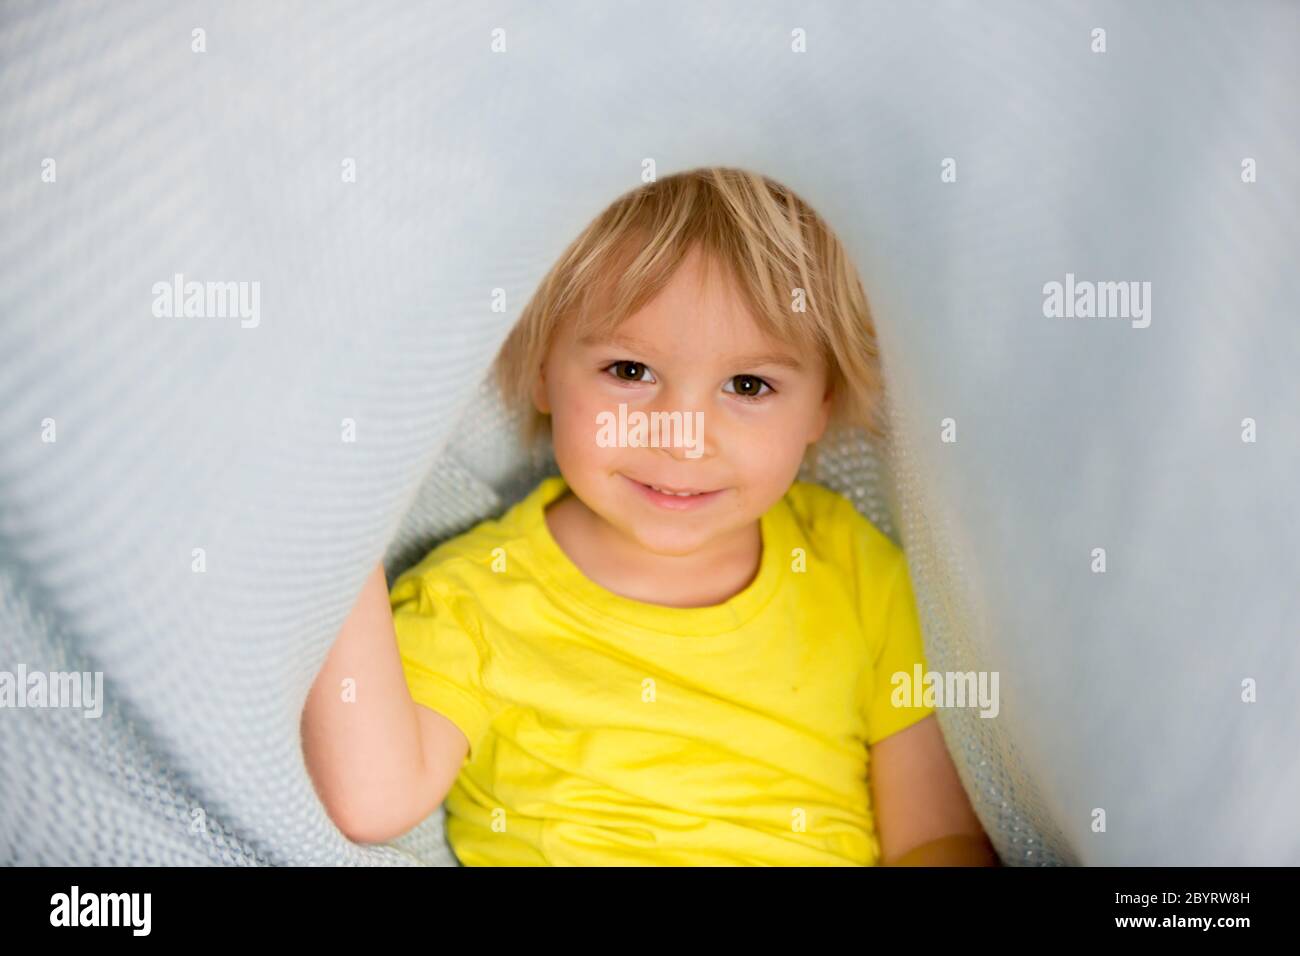 Kleiner kleiner kleiner kleiner Junge mit gelbem Hemd, versteckt unter Decke, lächelnd glücklich Stockfoto